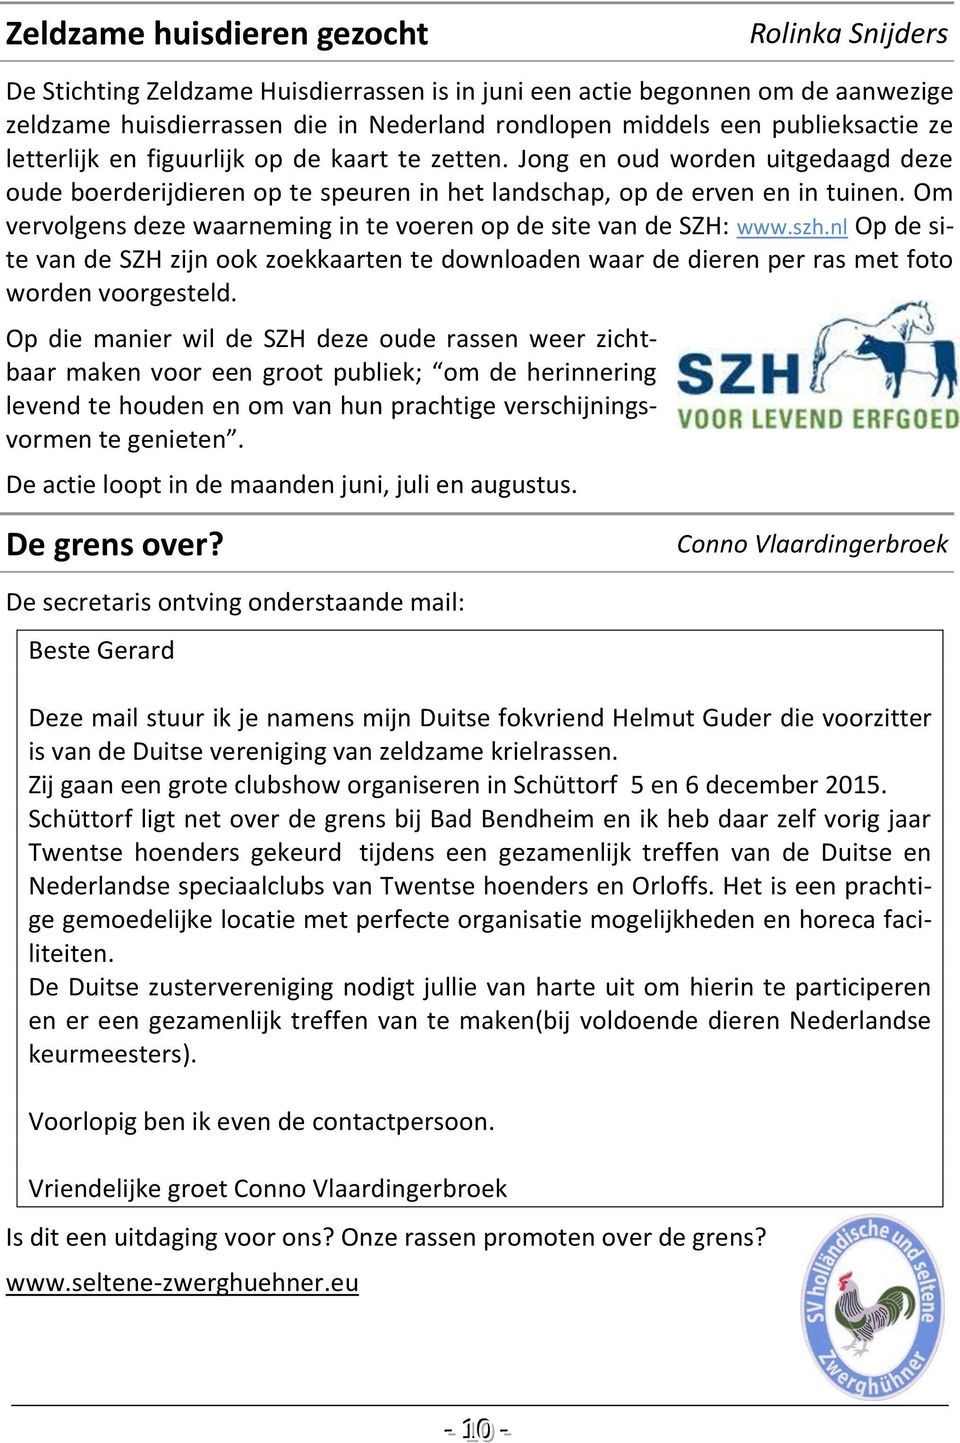 Om vervolgens deze waarneming in te voeren op de site van de SZH: www.szh.nl Op de site van de SZH zijn ook zoekkaarten te downloaden waar de dieren per ras met foto worden voorgesteld.